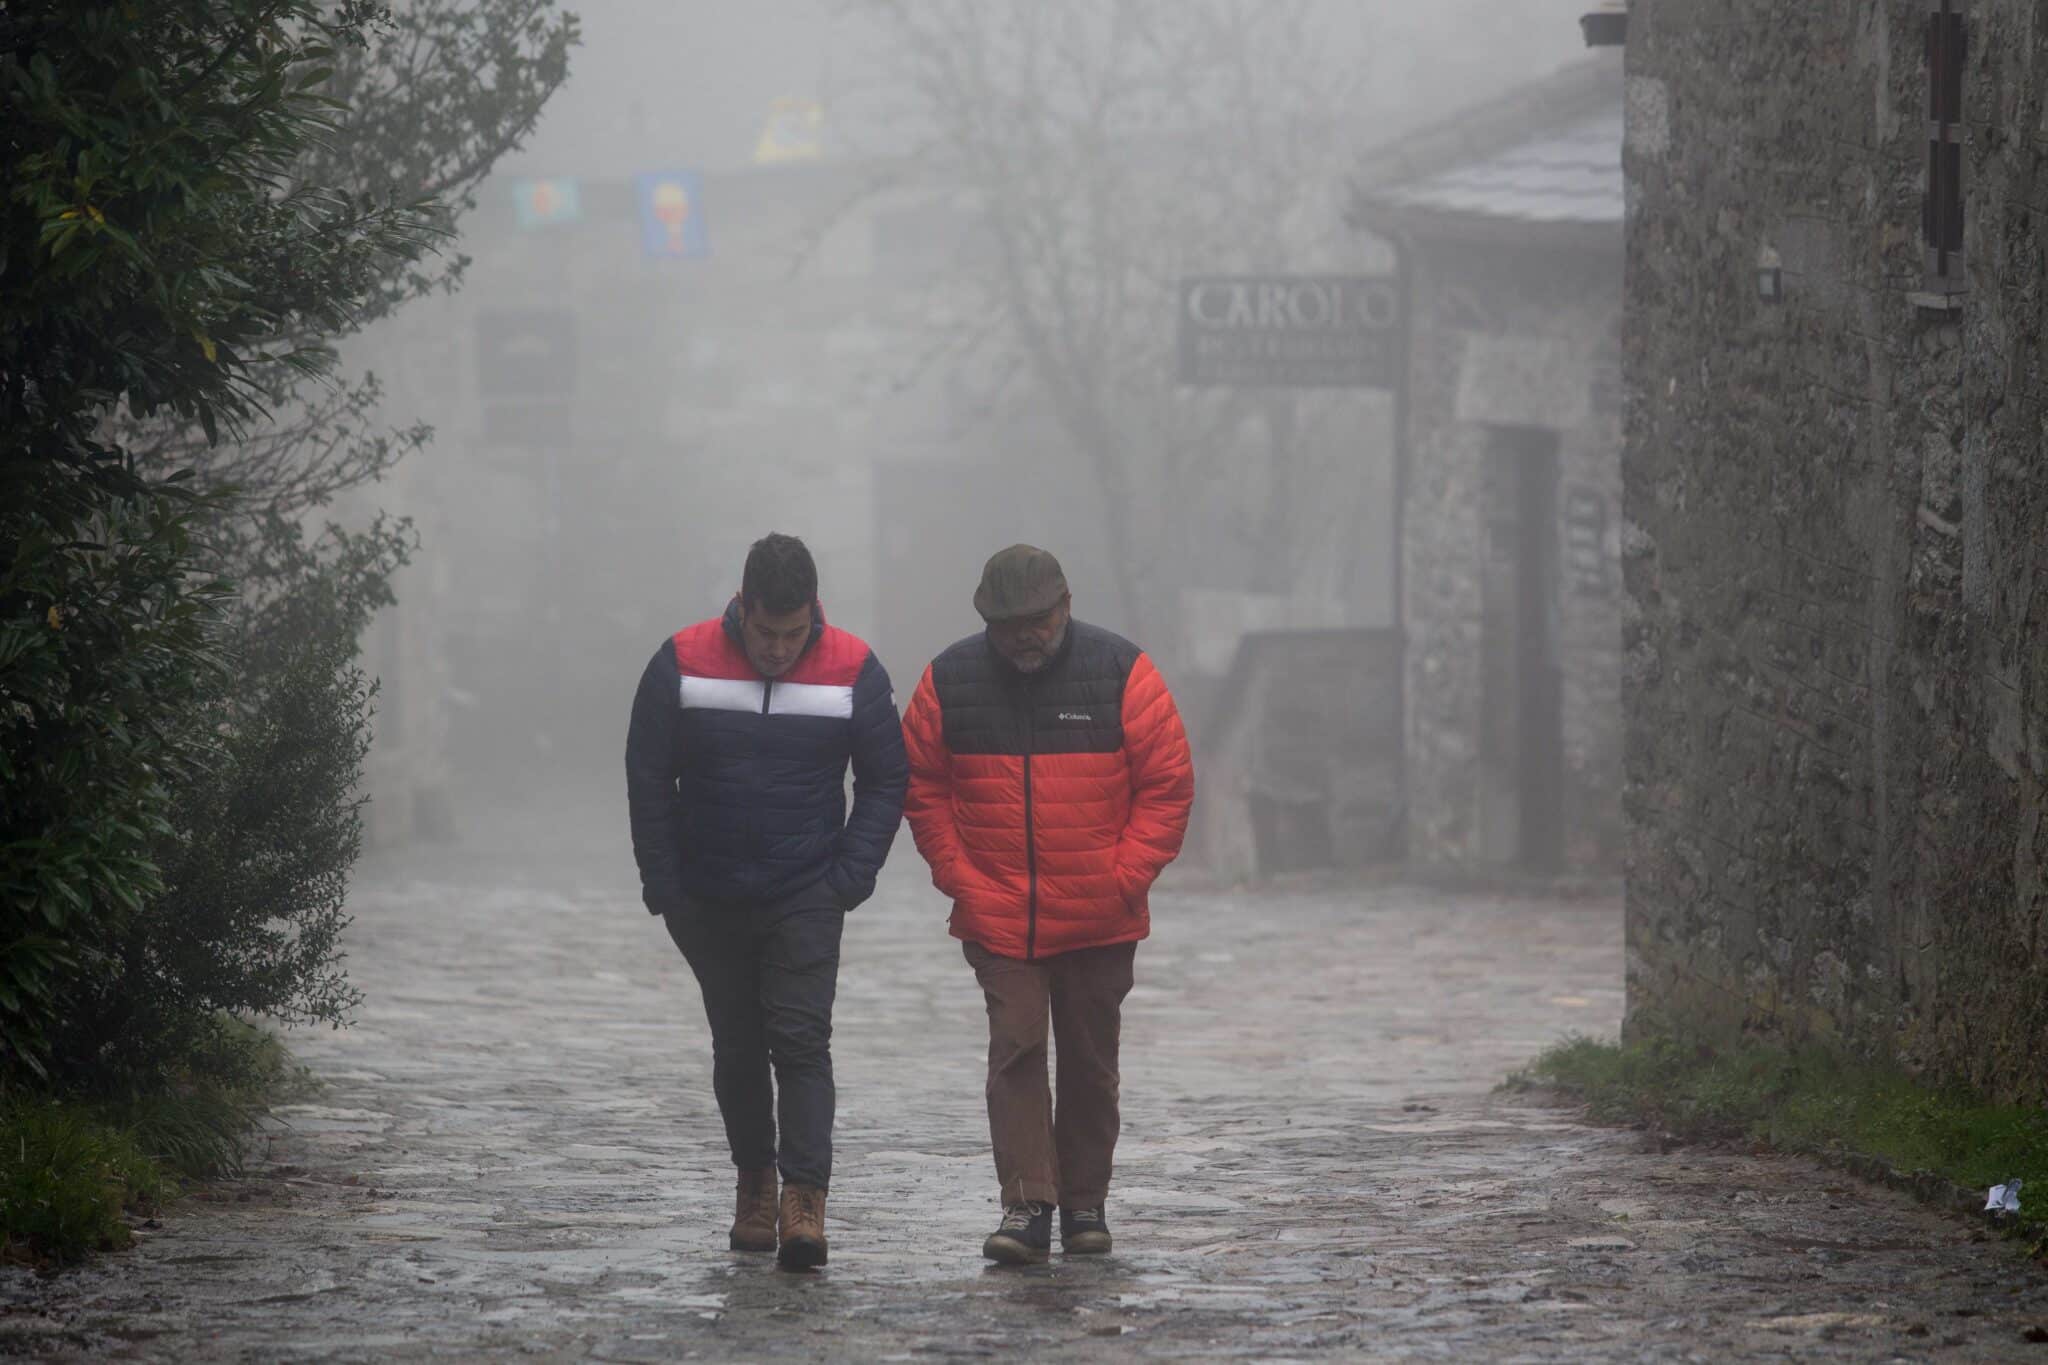 Dos hombres caminan entre la niebla en la aldea prerromana de O Cebreiro, Concello de Pedrafita do Cebreiro, Lugo, Galicia (España)